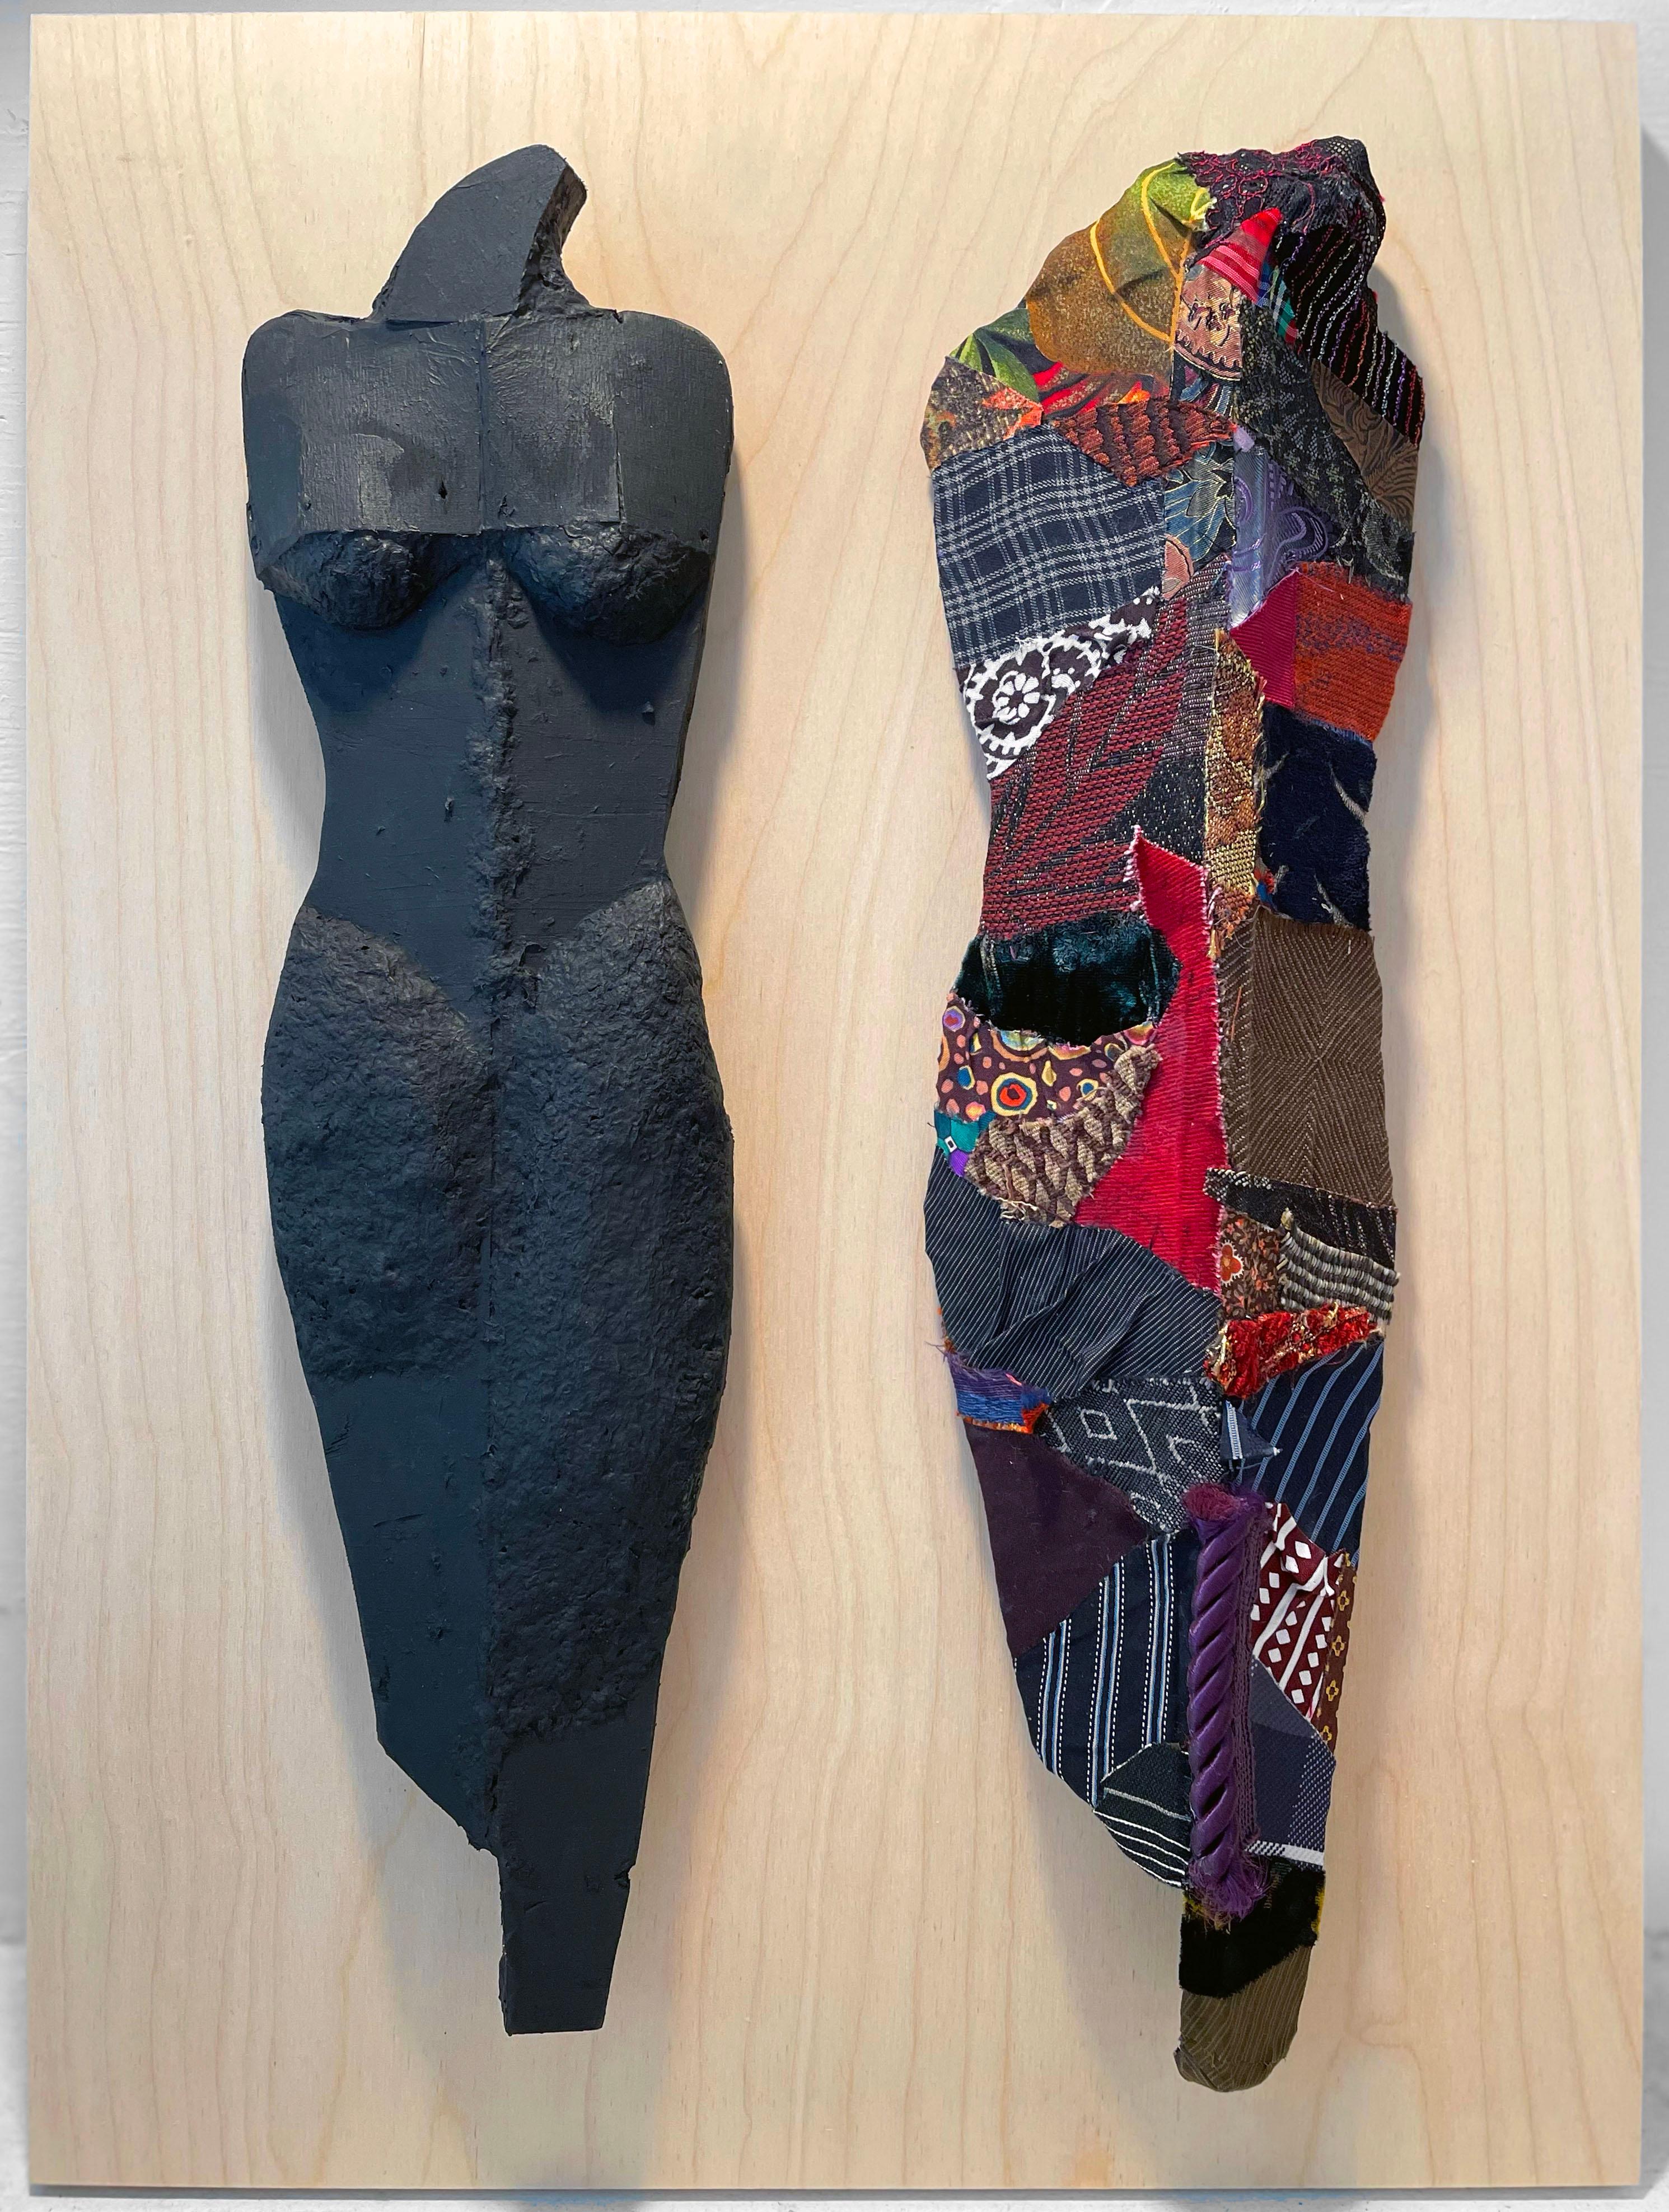 Linda Stein, 1218 - Contemporary Art 3D Mixed Media Fabric Sculptural Collage

Linda Stein begann ihre Knights of Protection-Serie, nachdem sie nach dem 11. September 2001 gezwungen war, ihr Studio in Downtown New York für ein Jahr zu räumen.  Die